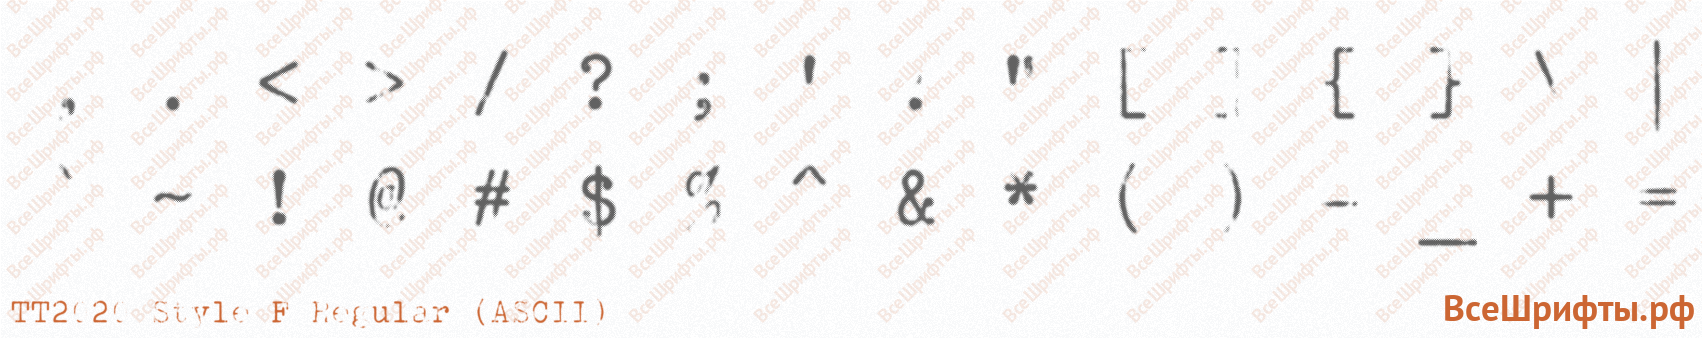 Шрифт TT2020 Style F Regular (ASCII) со знаками препинания и пунктуации